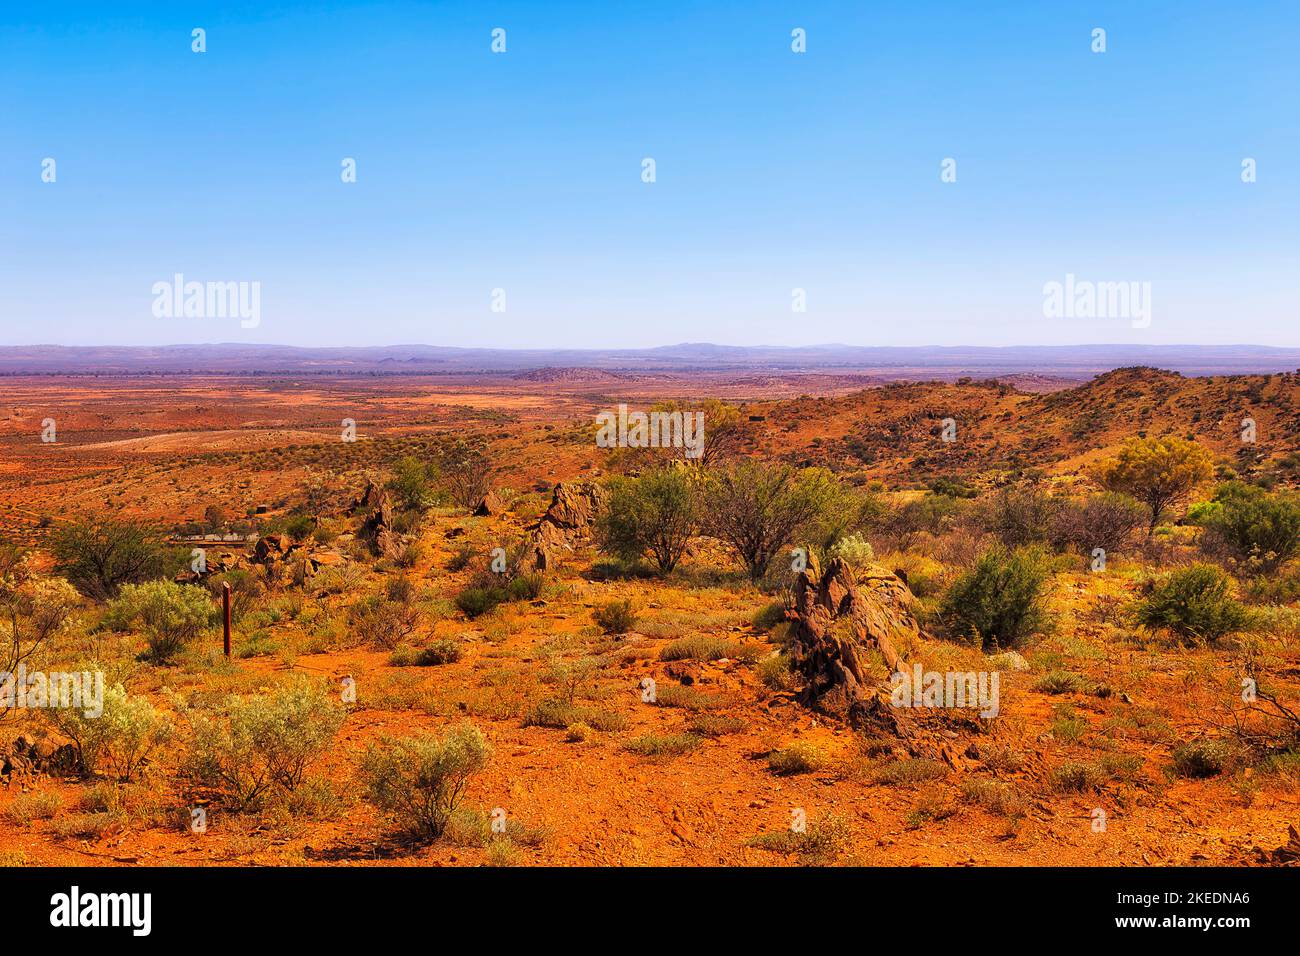 Broken Hill living desert garden on hill tops overlooking scenic valley of red soil Australian outback. Stock Photo